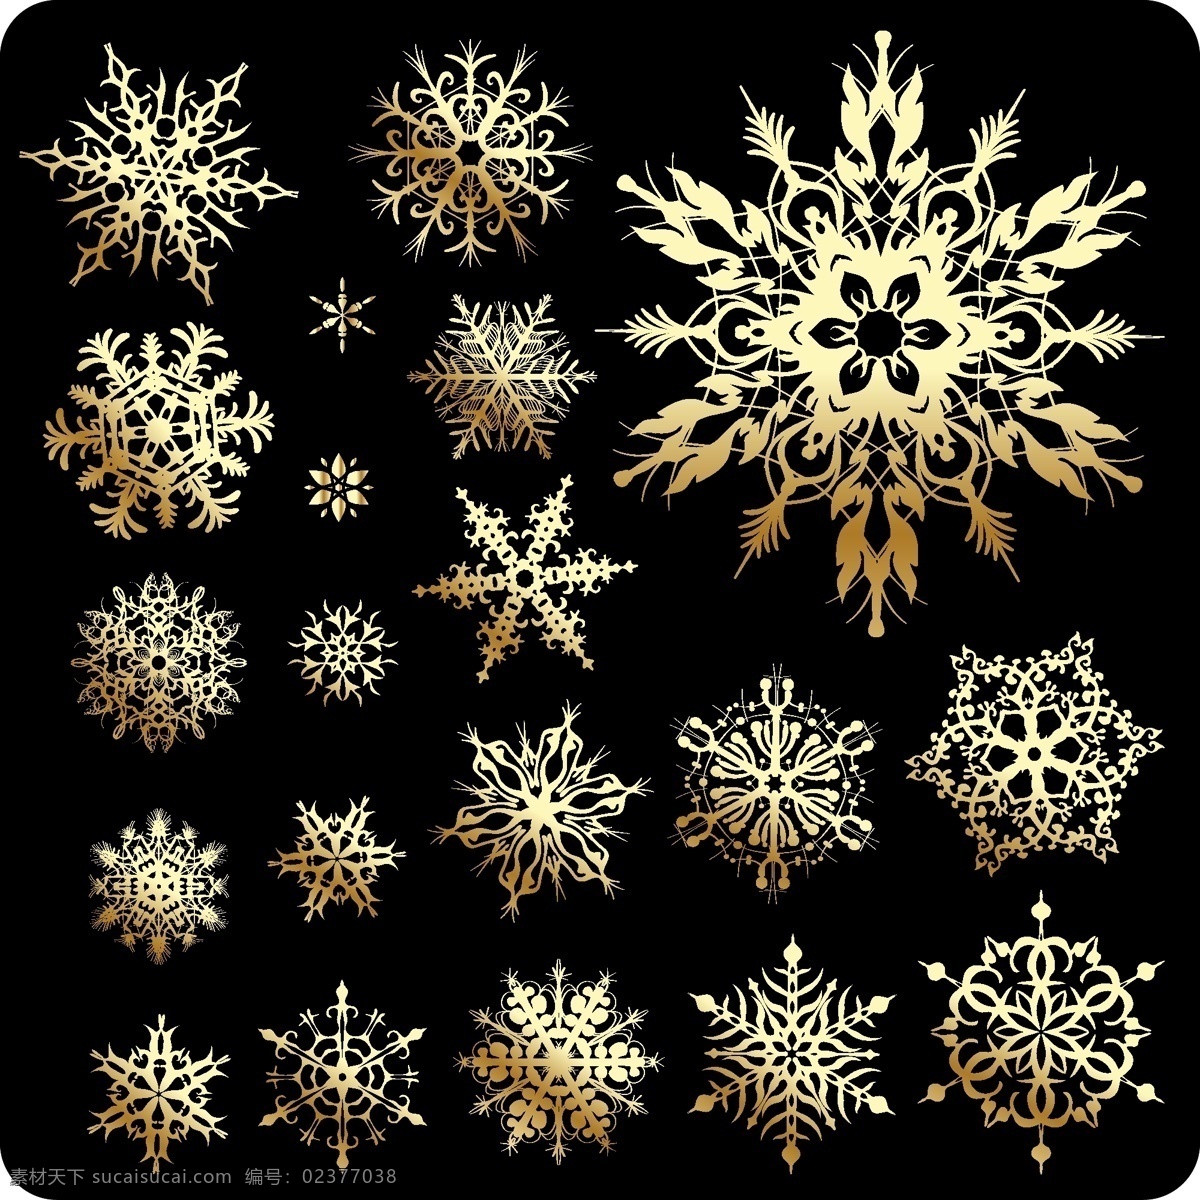 金色雪花 圣诞节 喜庆 节日素材 新年素材 金色 雪花 花纹 底纹背景 其他生物 生物世界 矢量素材 黑色